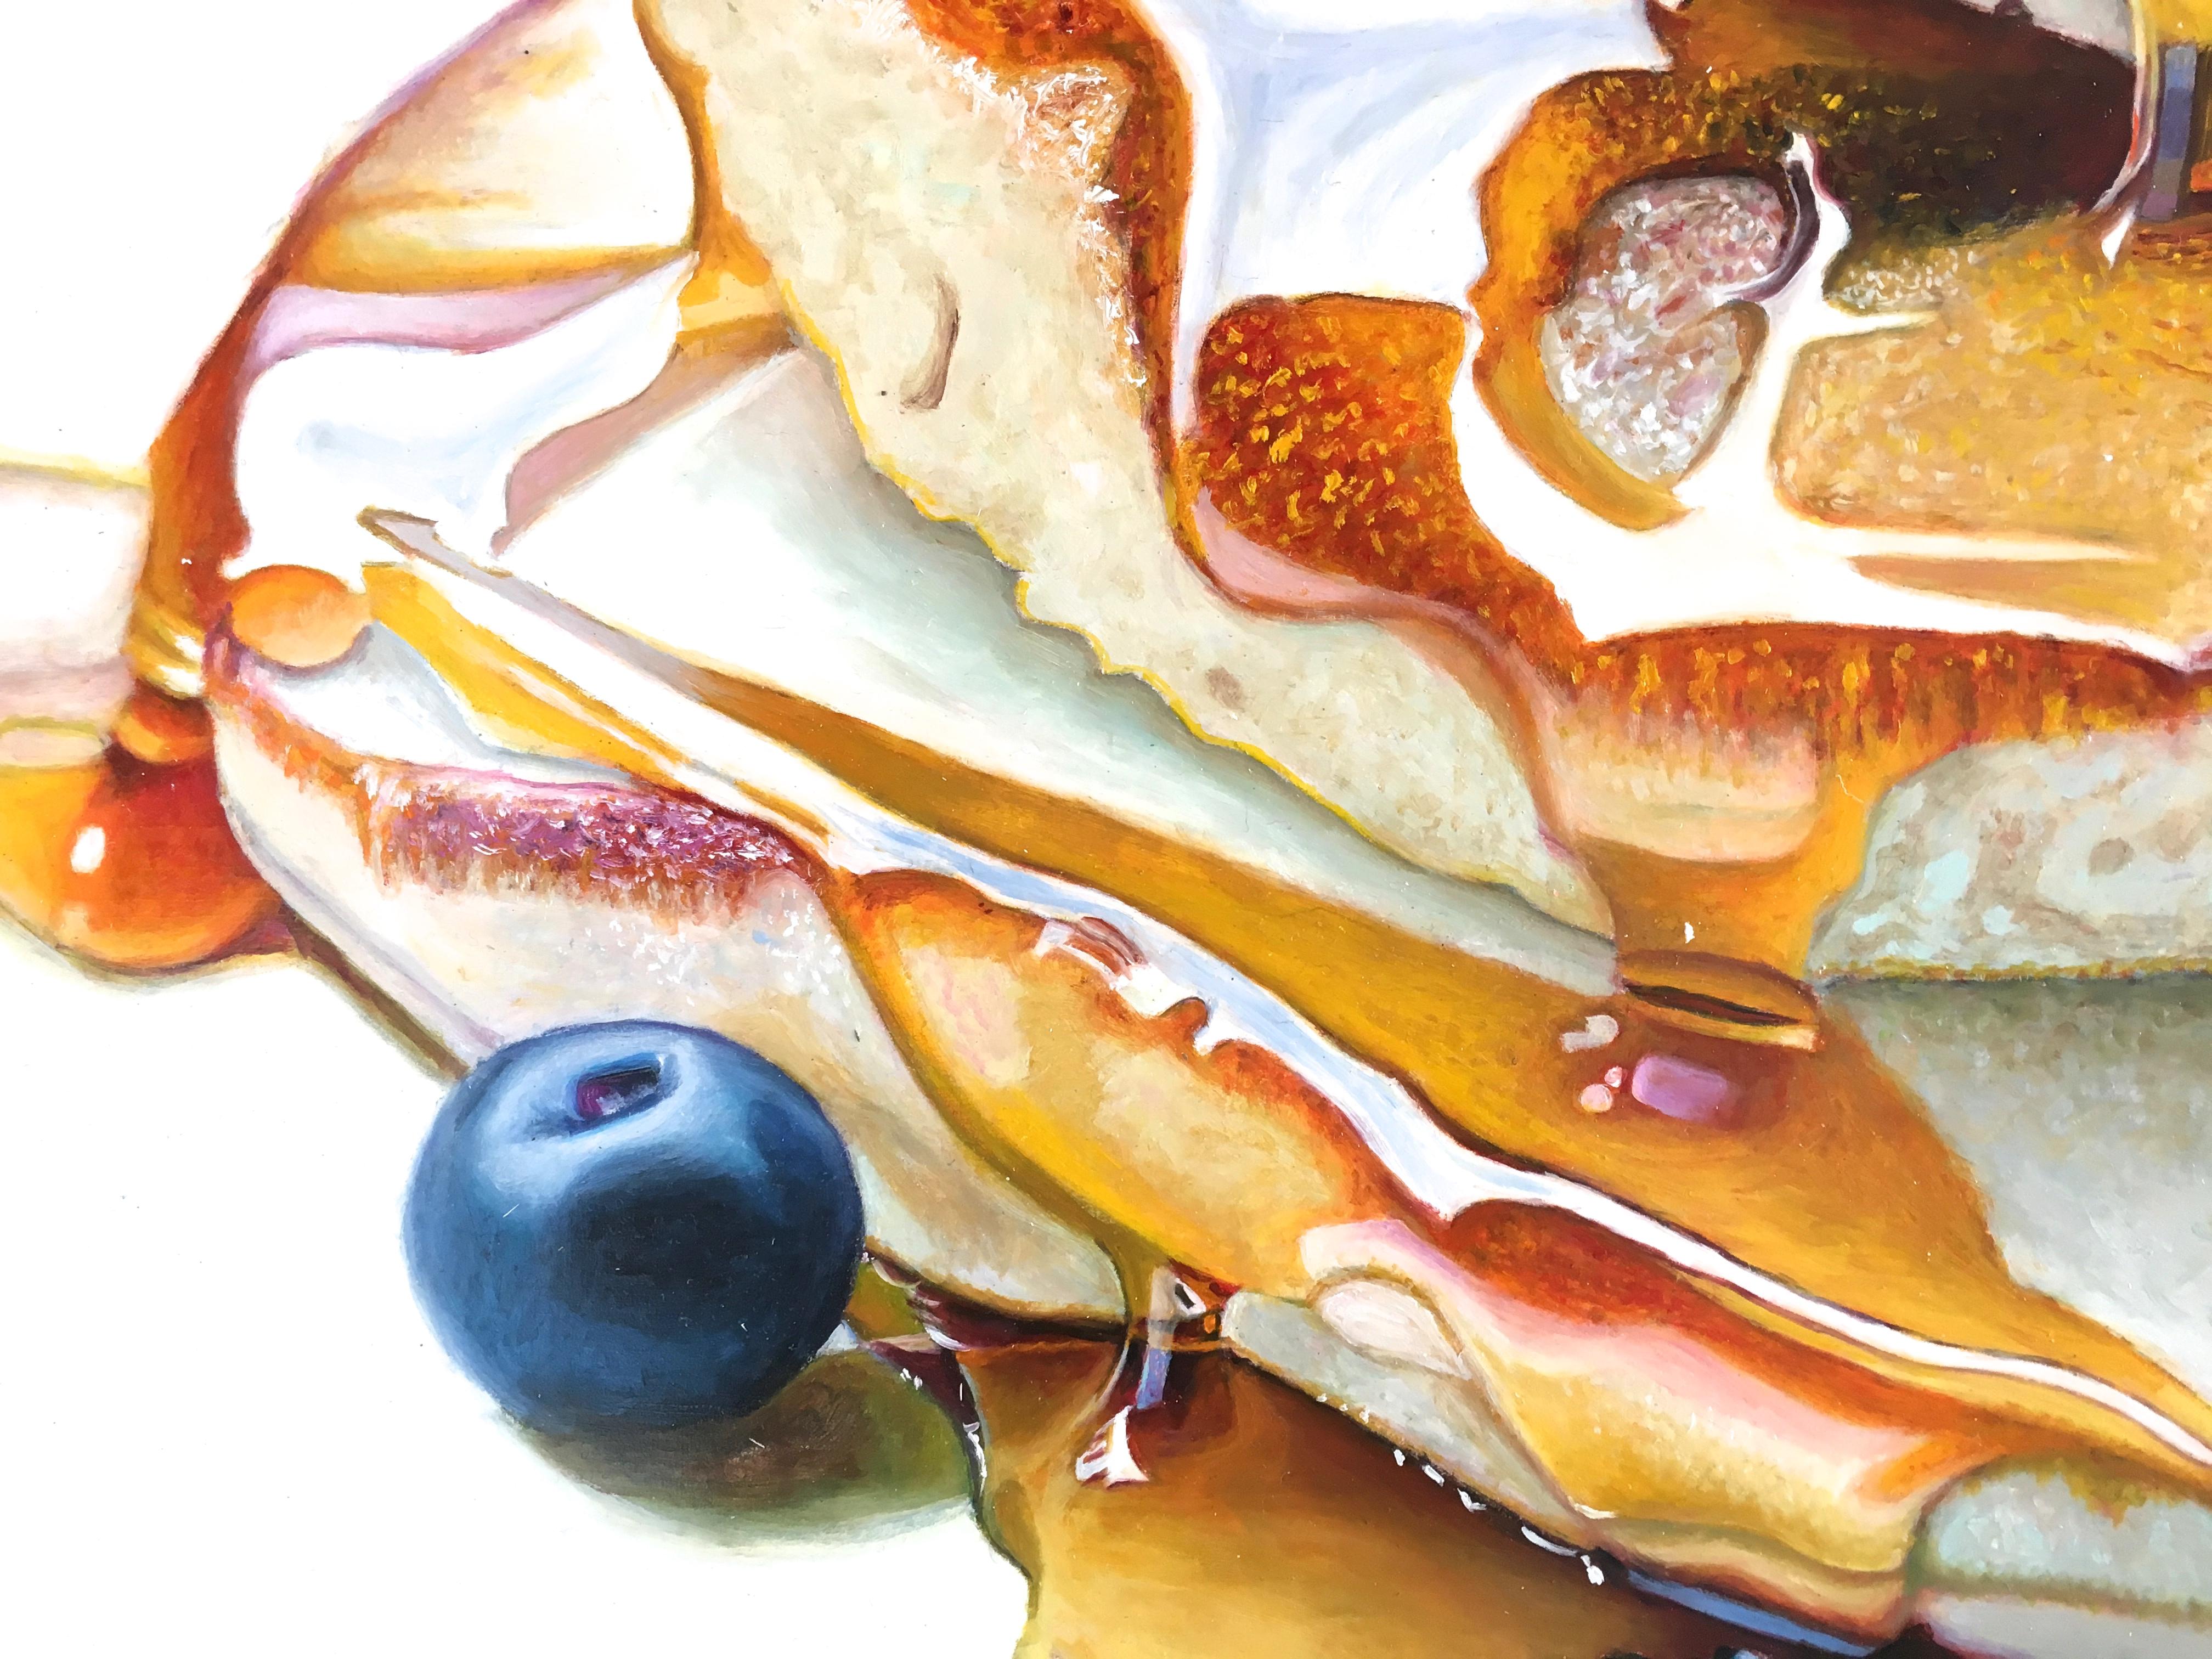 „Pancakes with Blueberries“:: 2018:: Öl auf Tafel:: 24::25 x 36::25 Zoll. 

Mary Ellen Johnson ist eine der bedeutendsten amerikanischen Fotorealistinnen der Gegenwart:: die heute arbeitet:: deren außergewöhnliche Bilder von Lebensmitteln